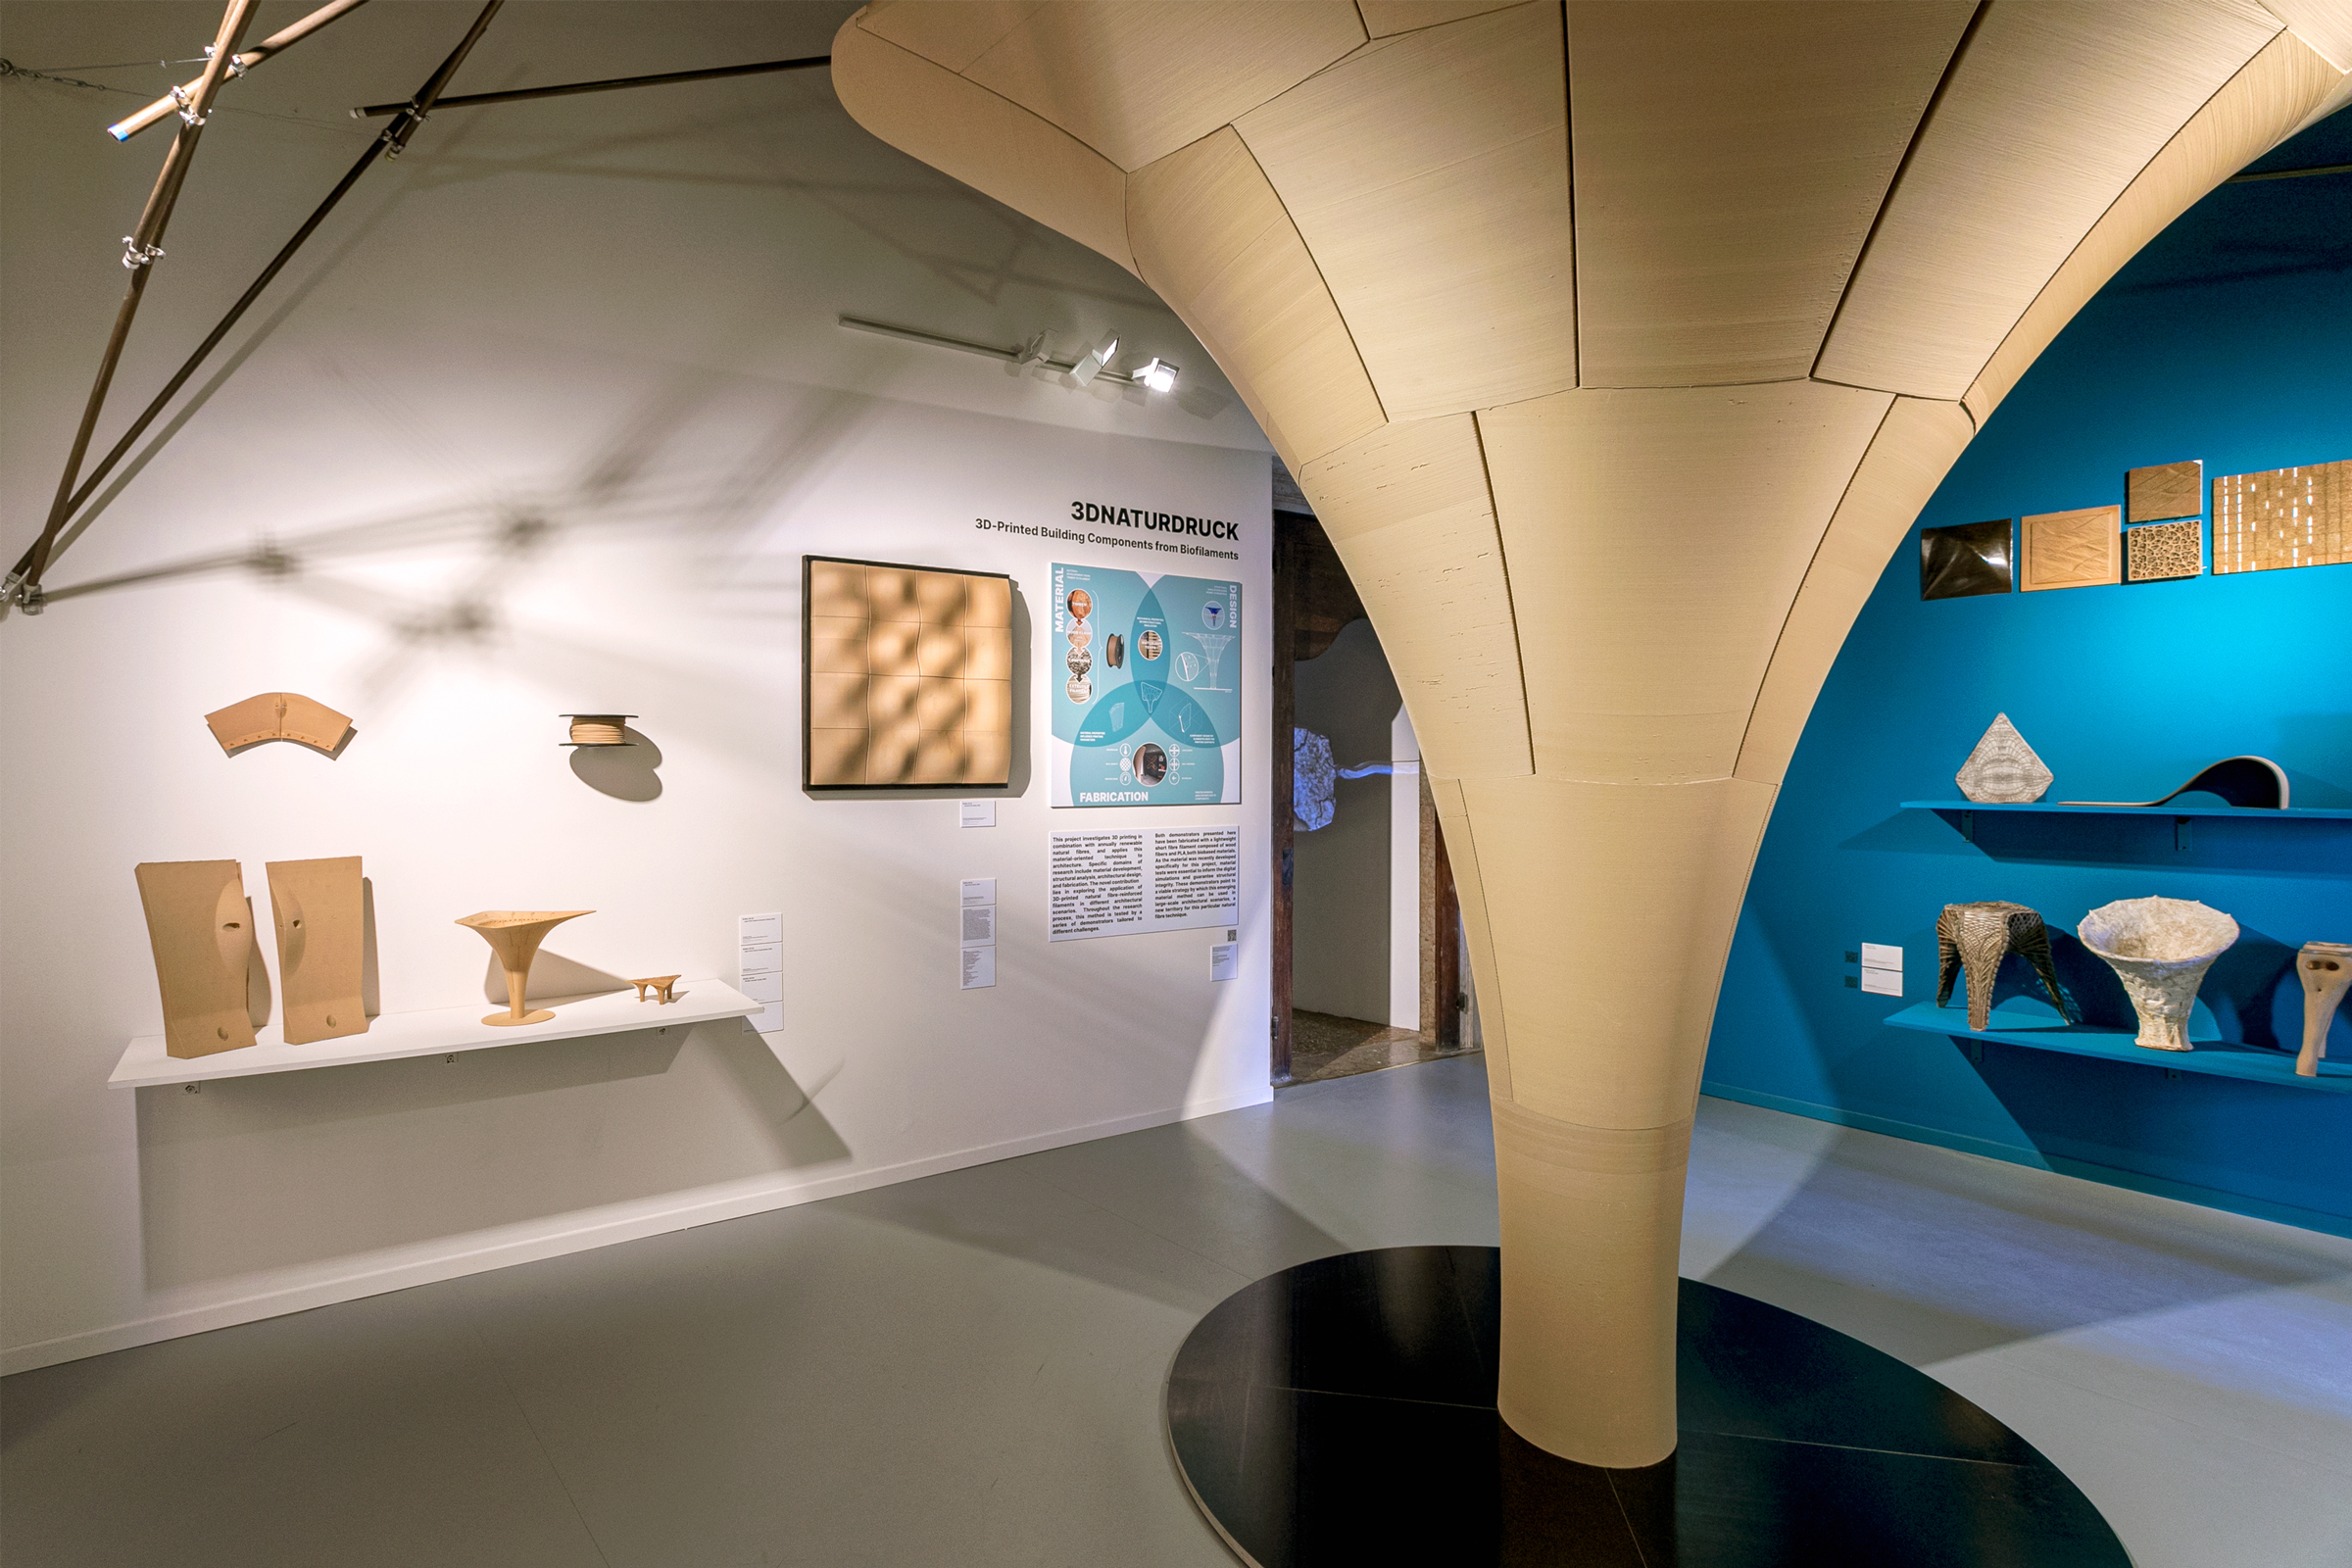 Das Foto zeigt einen Ausstellungsraum mit verschiedenen Exponaten. In der Mitte des Raumes steht eine raumhohe, trichterförmige Säule, die von unten nach oben immer breiter wird.